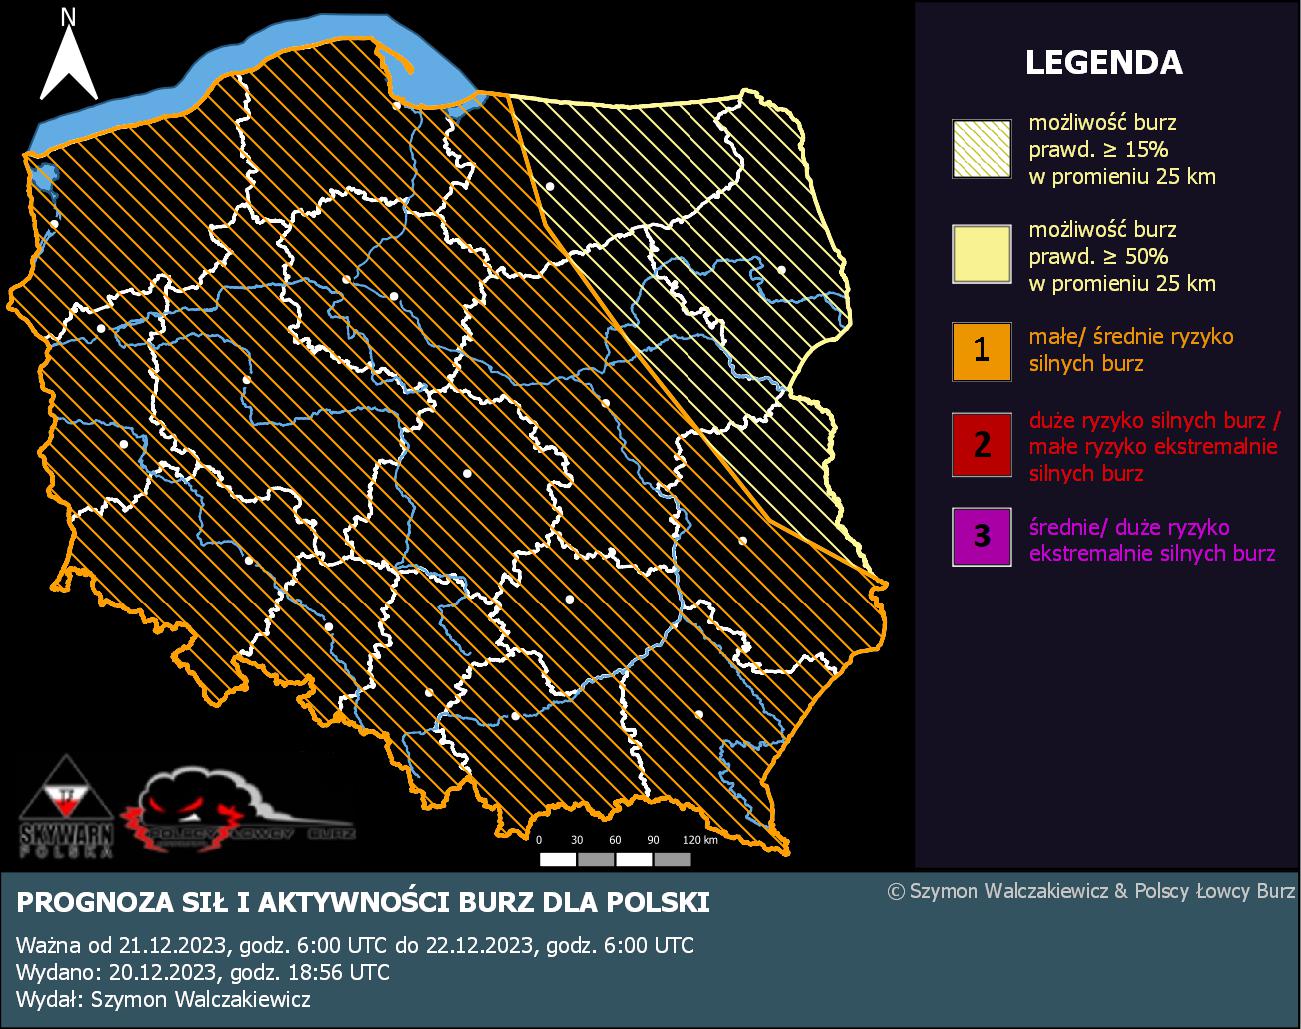 Prognoza konwekcyjna dla Polski na dzień 21.12.2023 i noc 21/22.12.2023 ...